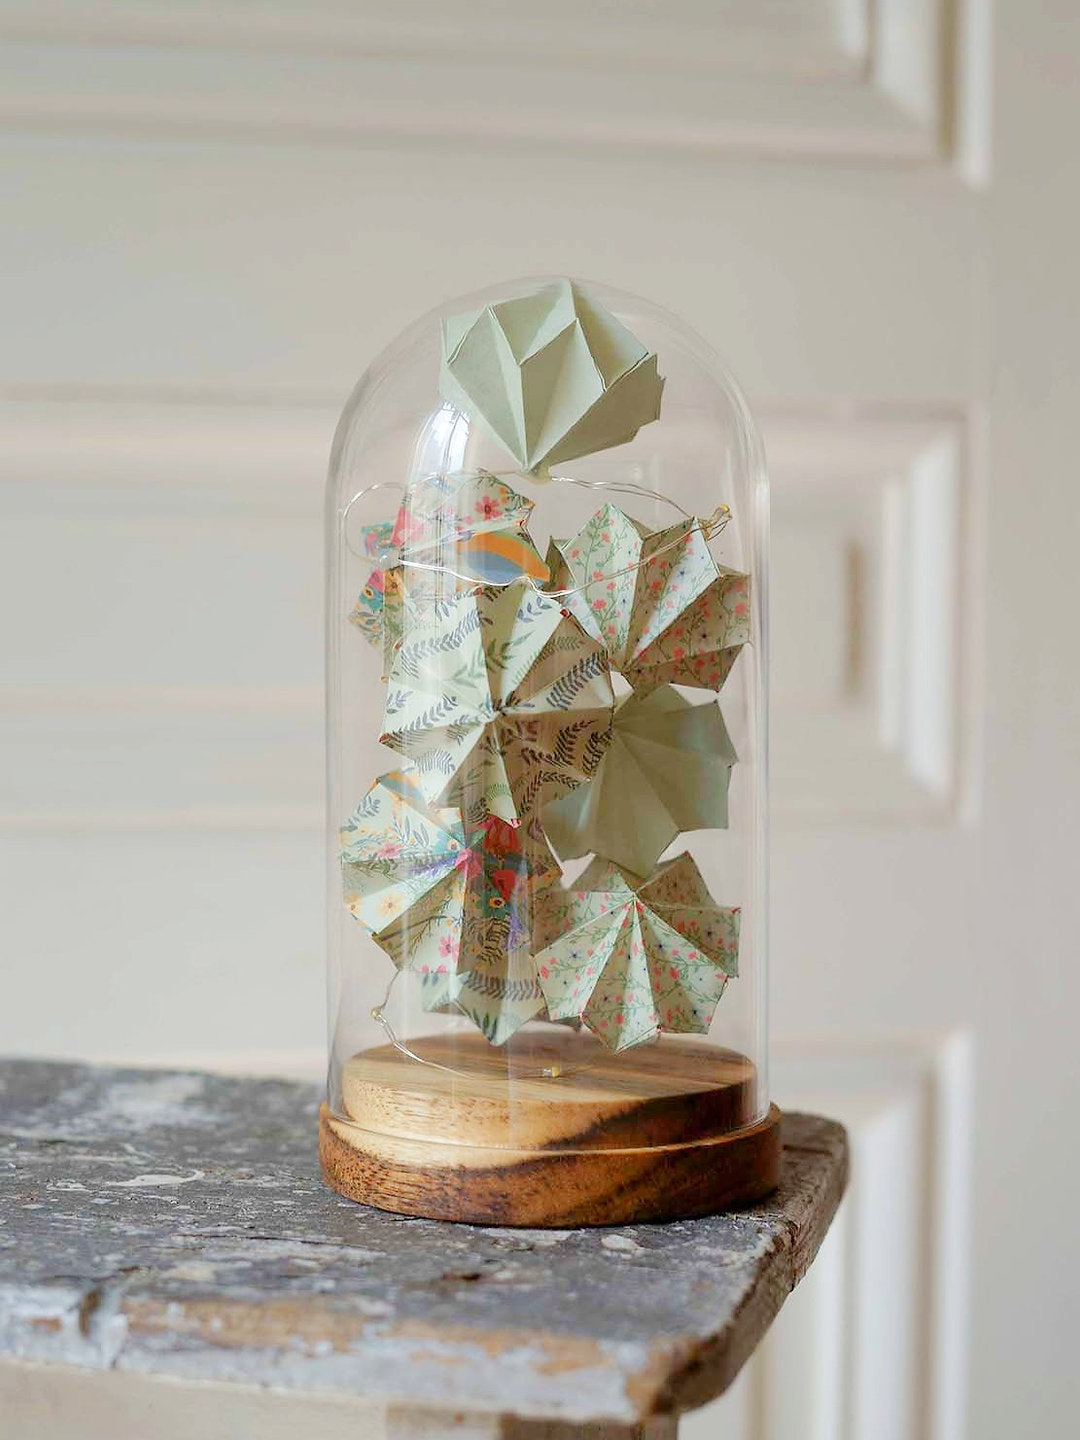 Grande cloche verre - Guirlande lumineuse de diamants en origami - Anis